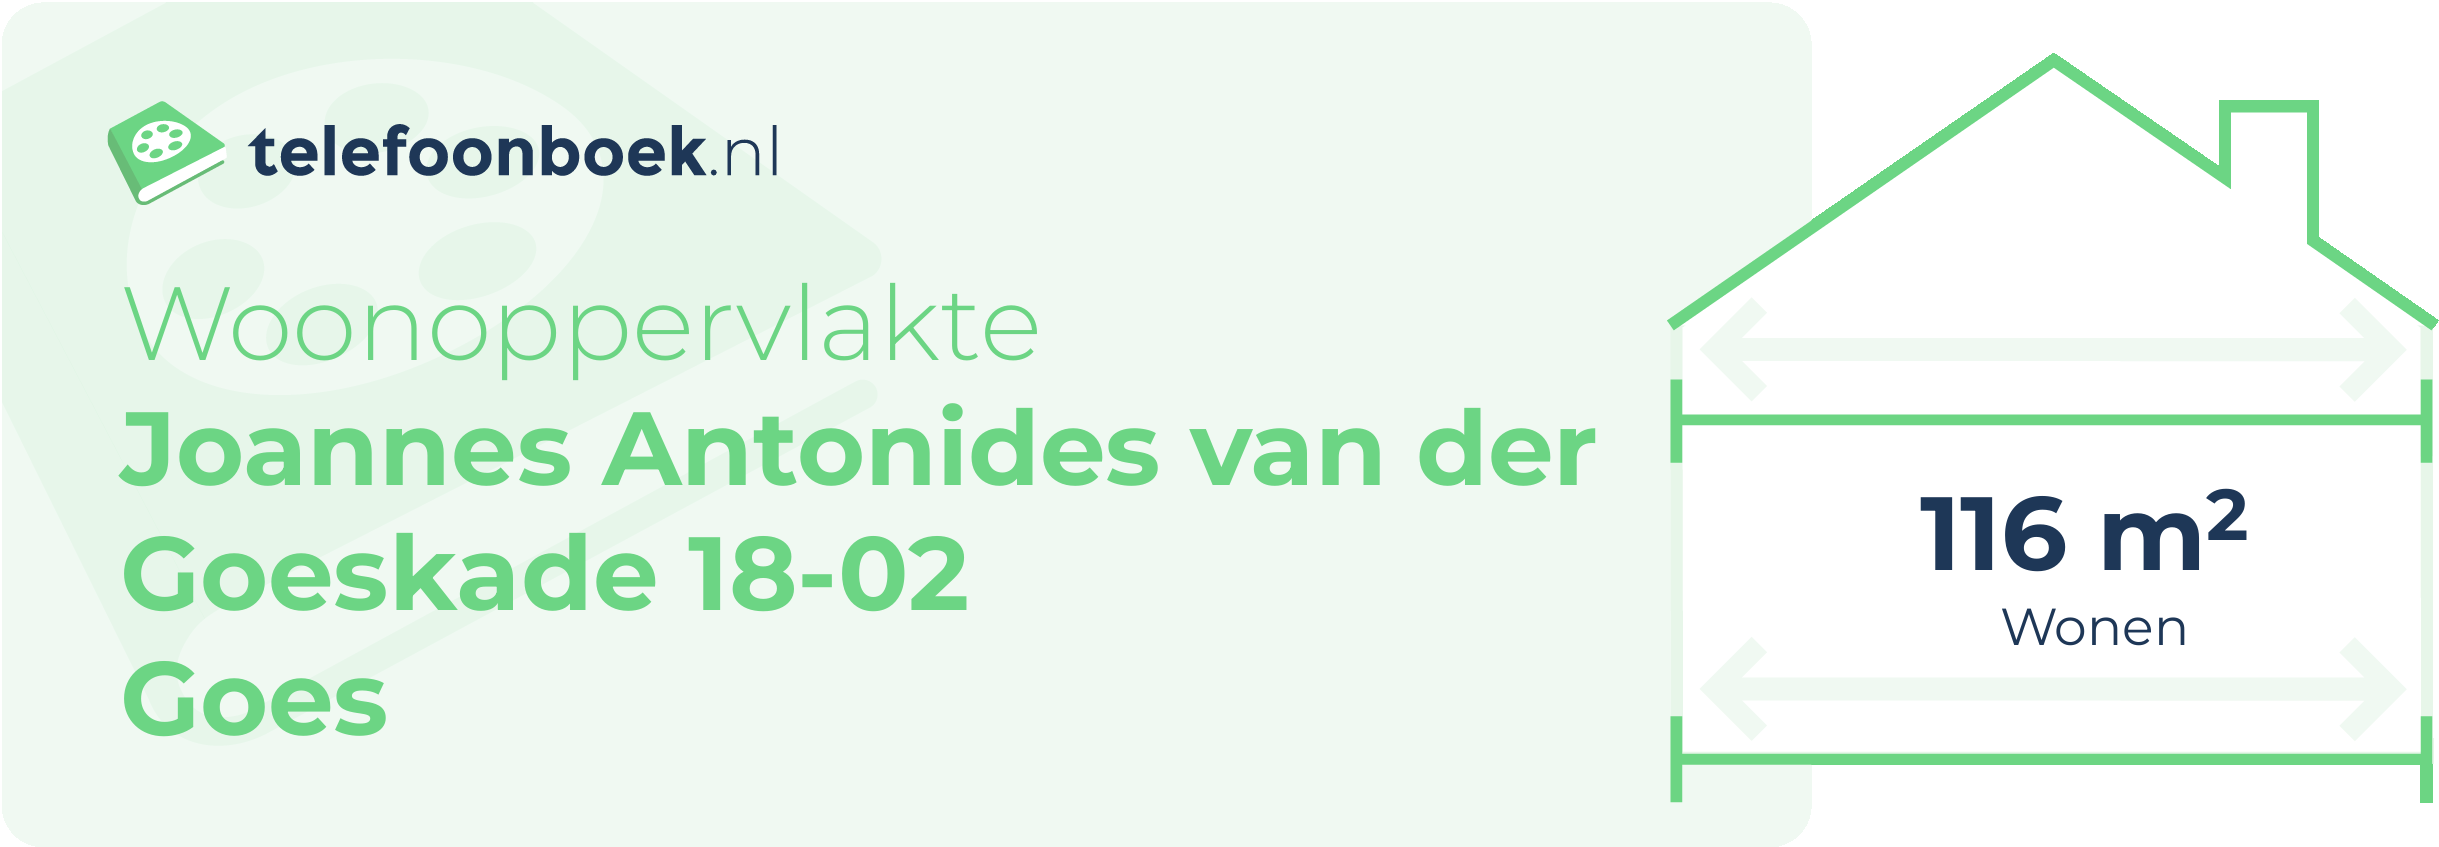 Woonoppervlakte Joannes Antonides Van Der Goeskade 18-02 Goes